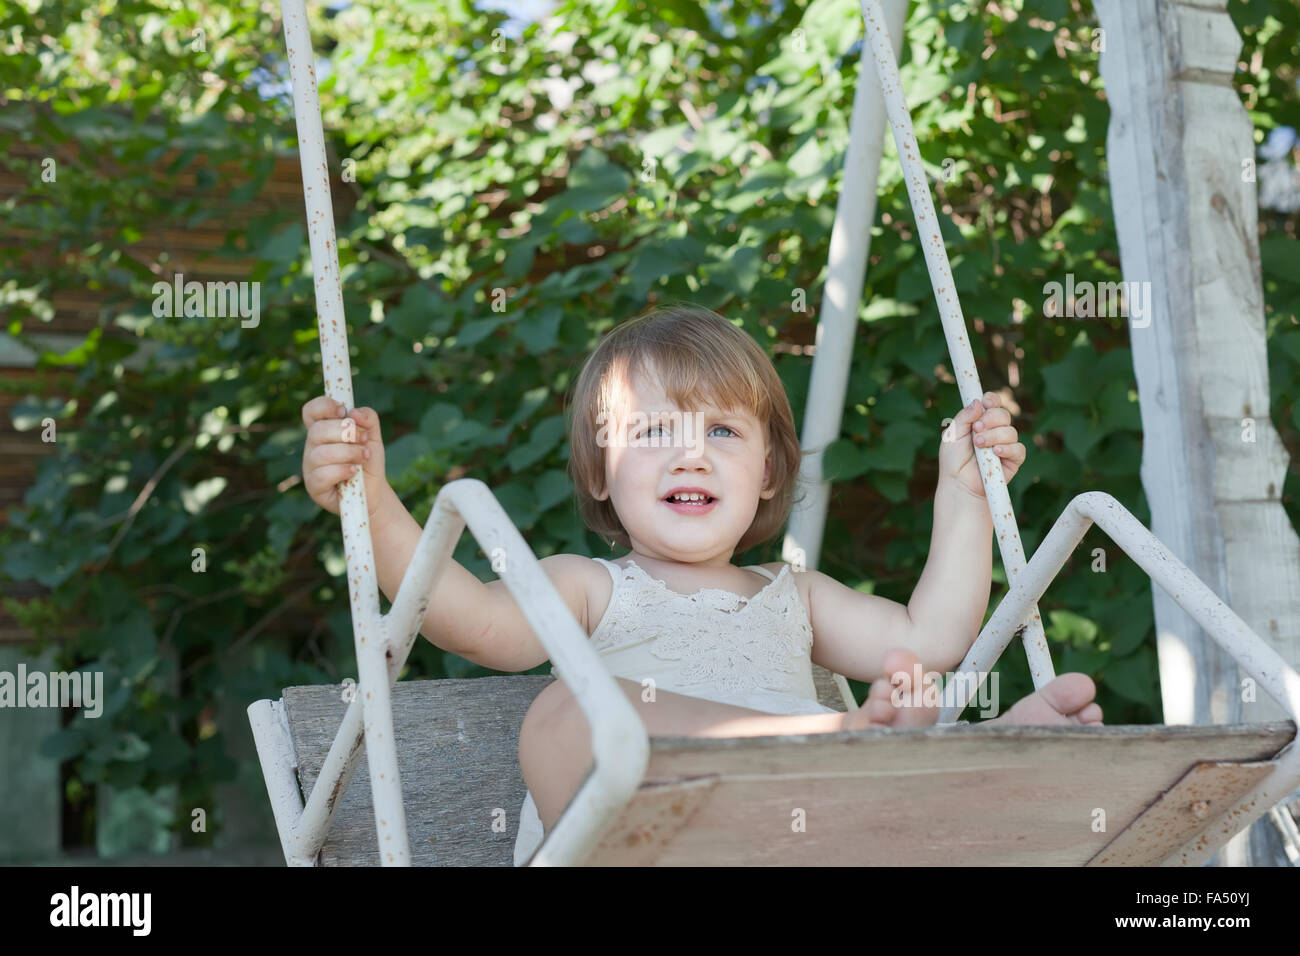 Lachende Mädchen auf der Schaukel im Sommerpark Stockfotografie Alamy